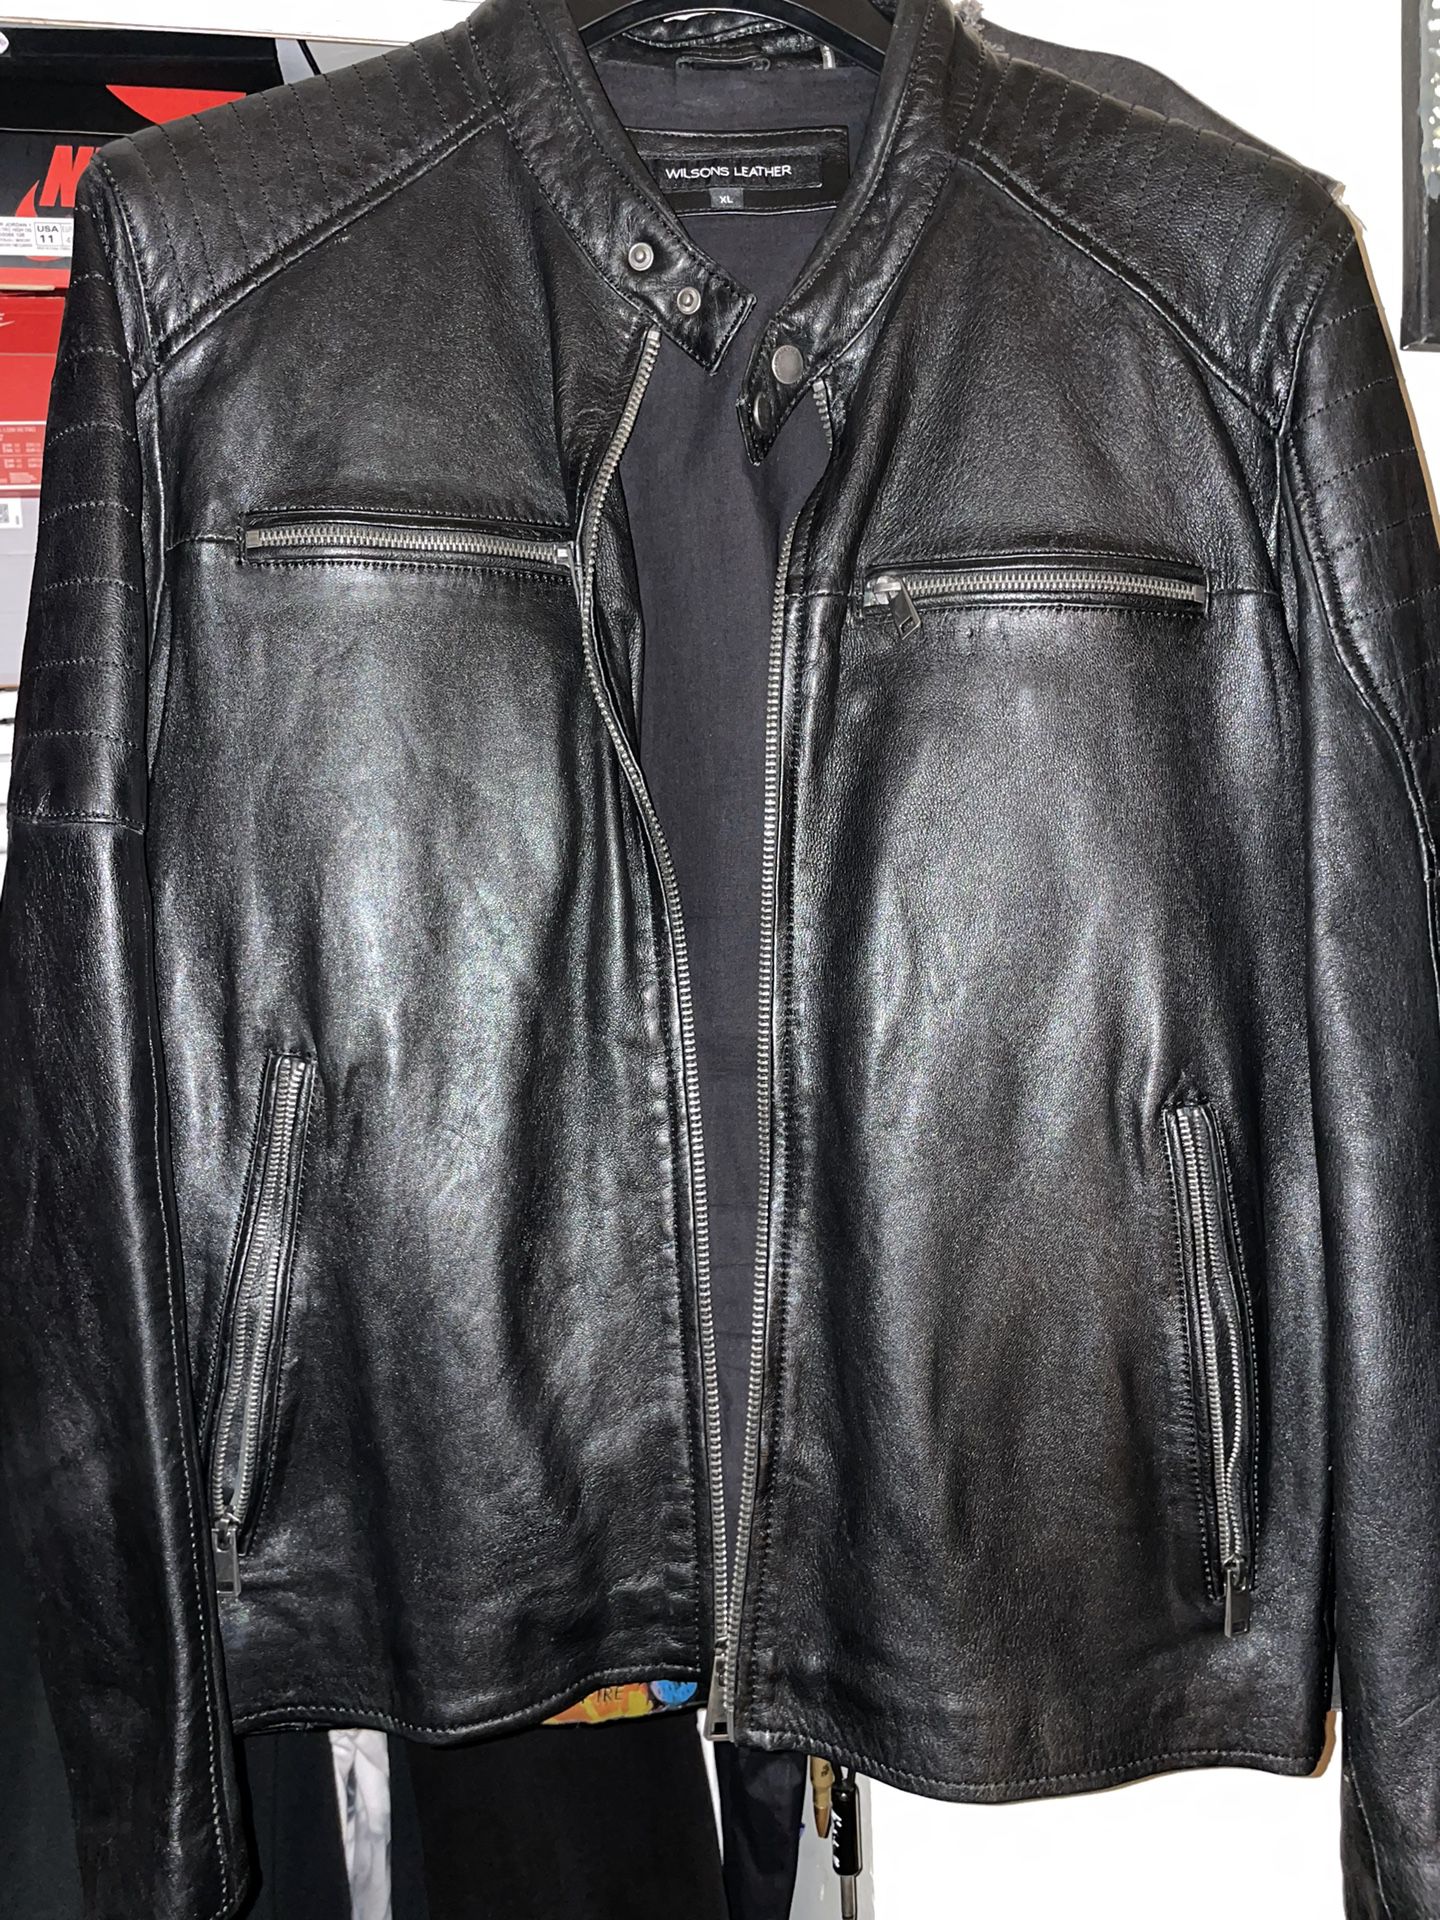 Wilsons Men’s Leather Jacket